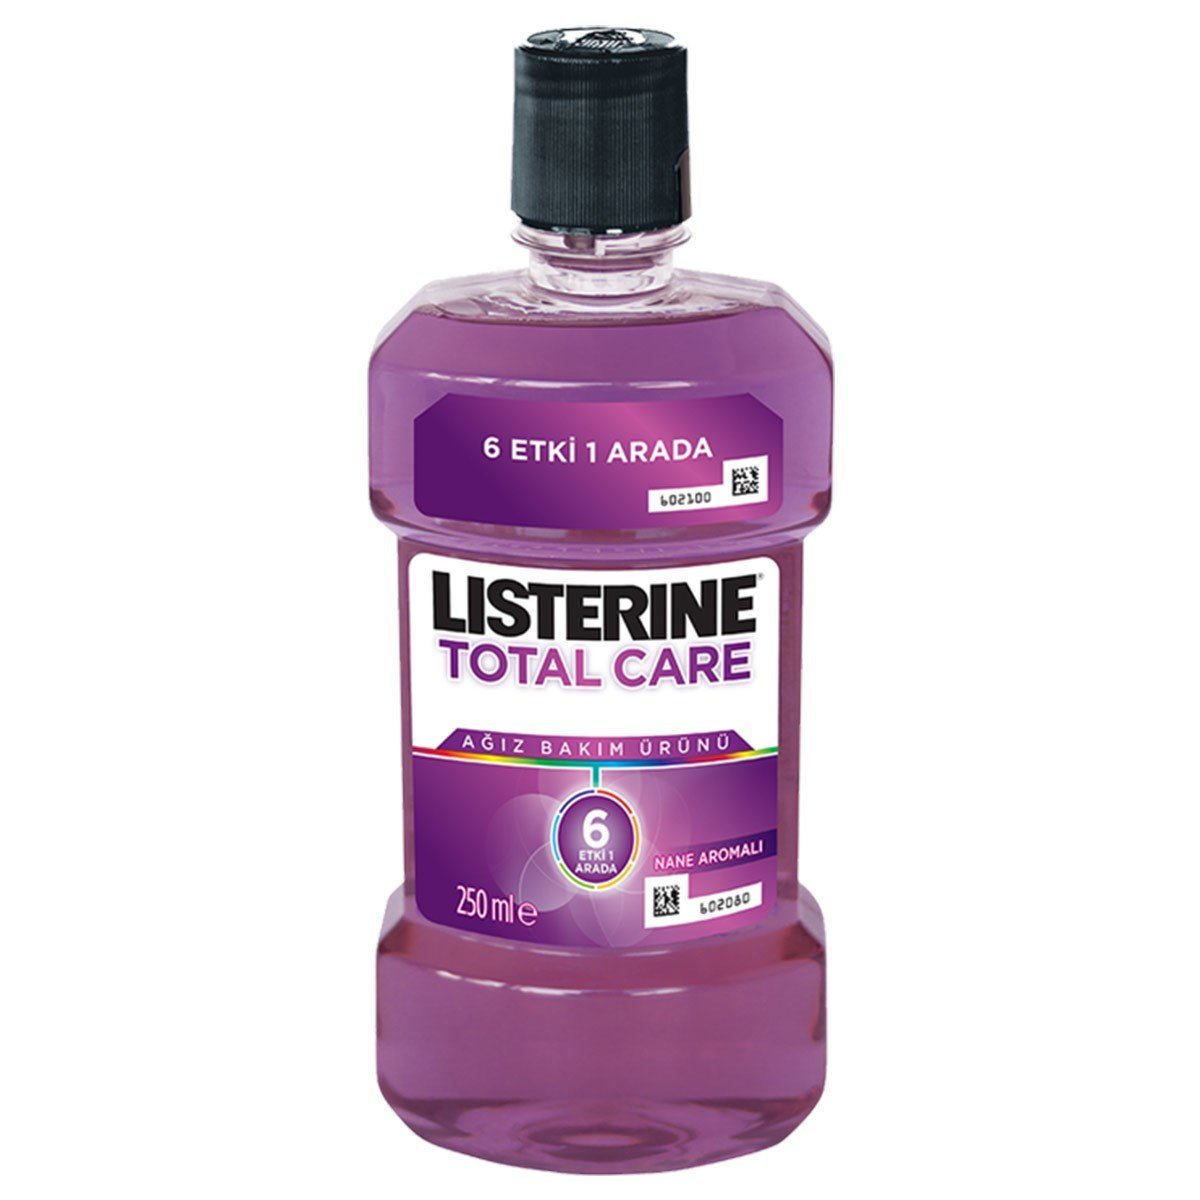 Listerine Total Care Sensitive 250 ml Ağız Bakım Ürünü Dermobu